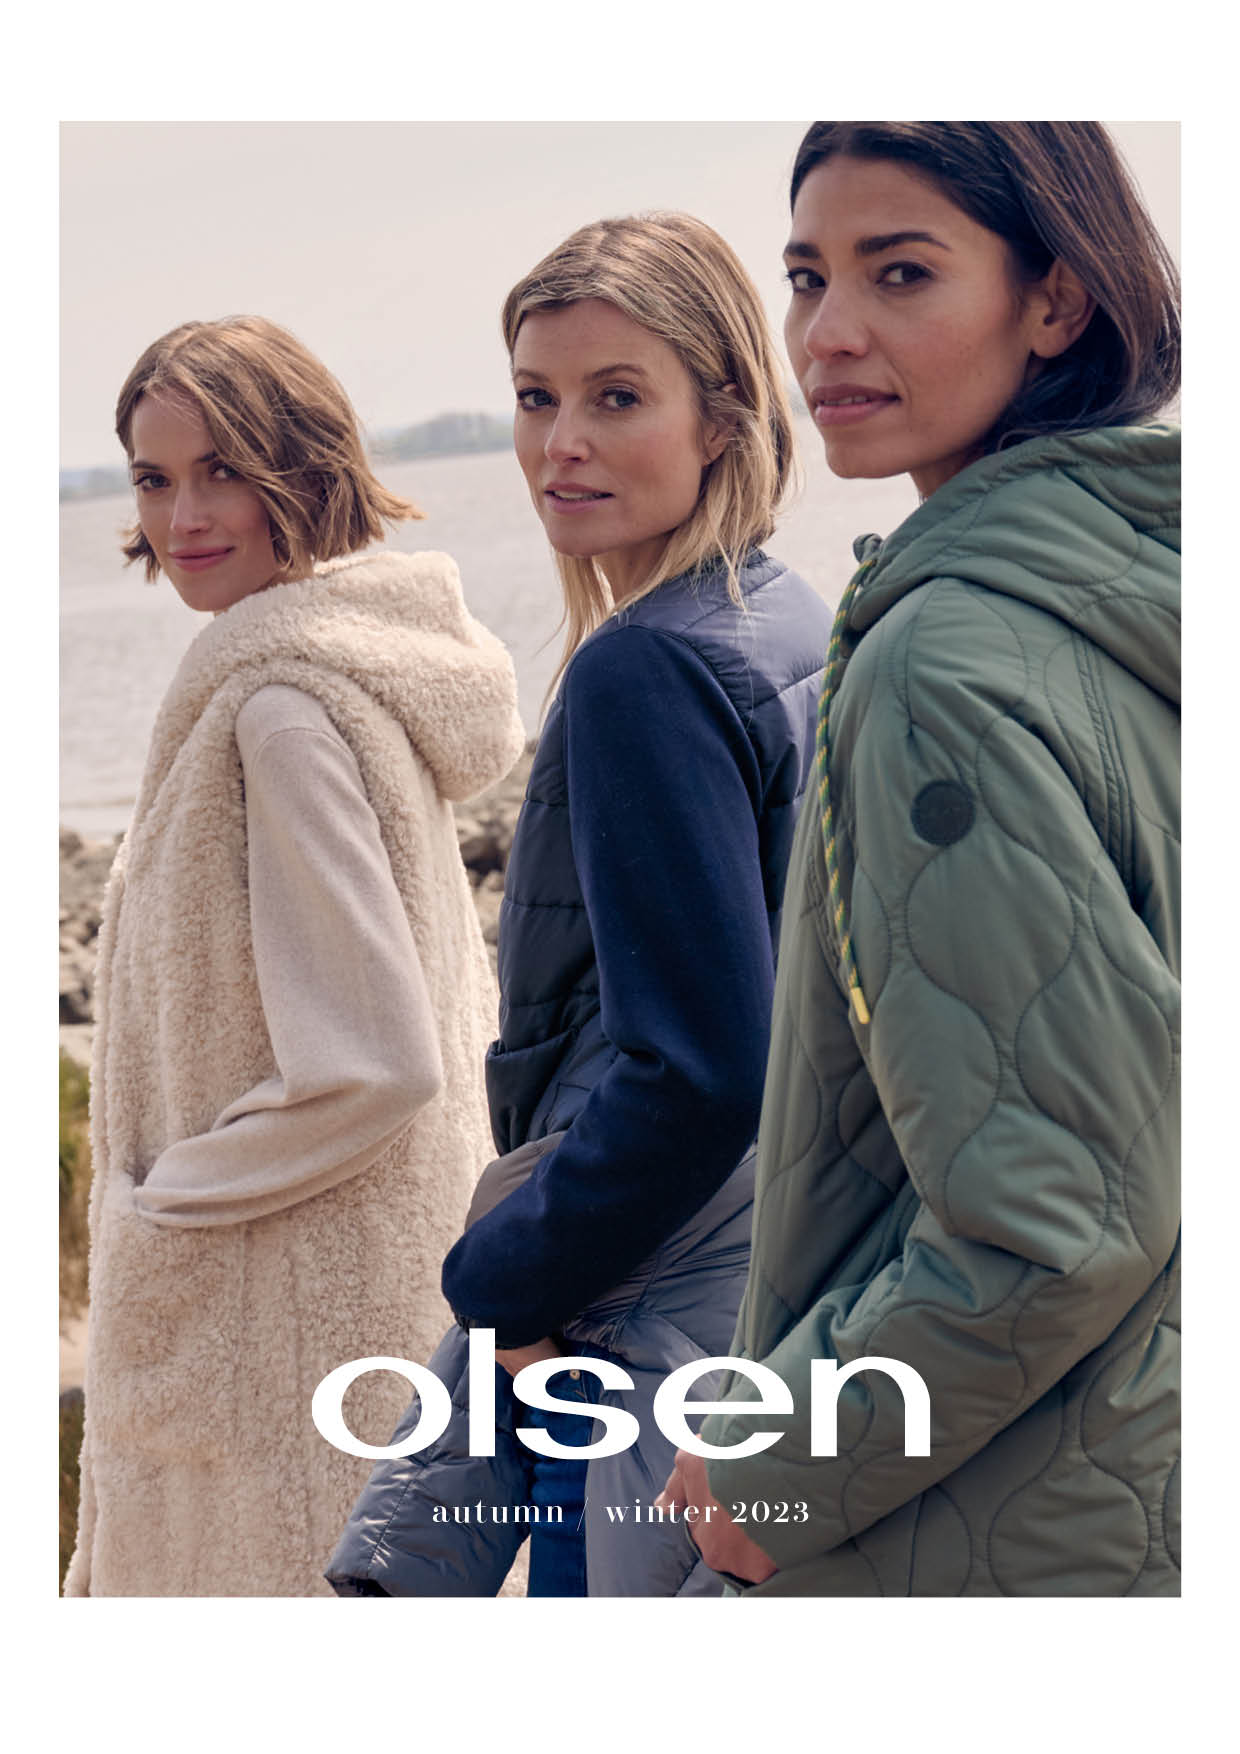 Women's Fashion & Lifestyle Brand | Olsen